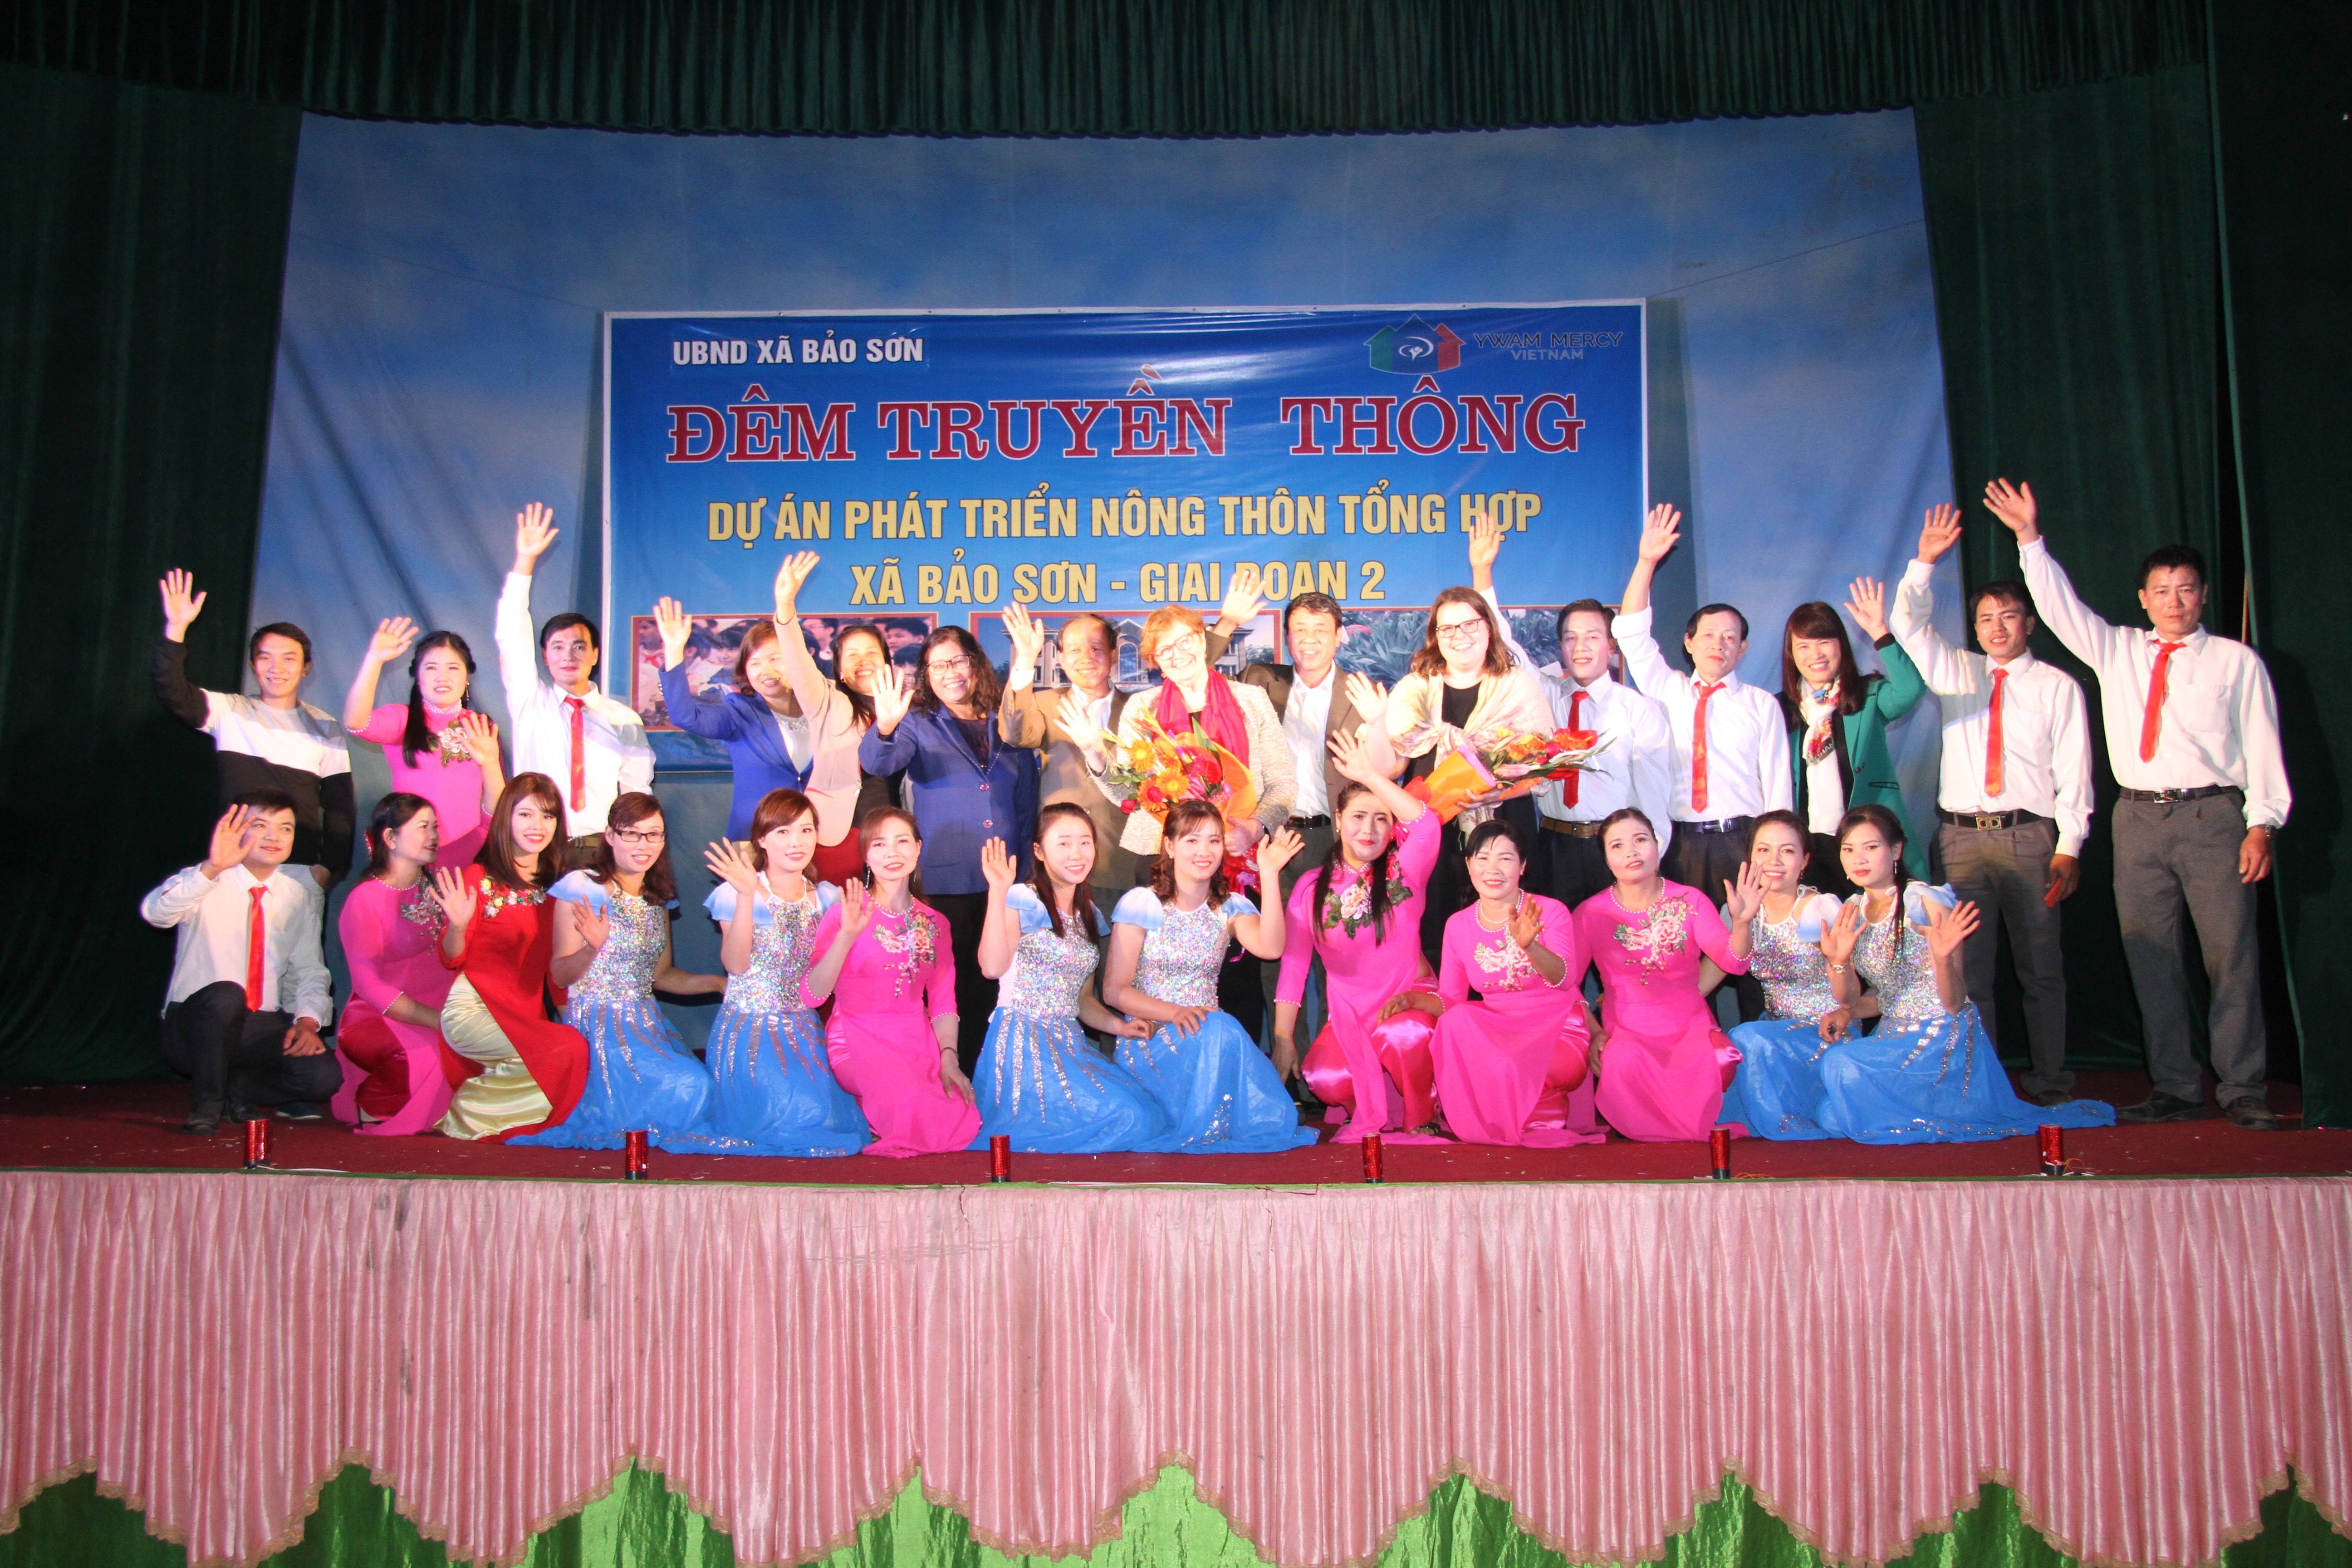  YWAM tổ chức "Đêm truyền thông" và khánh thành thư viện thân thiện trường THCS xã Bảo Sơn (Lục Nam)